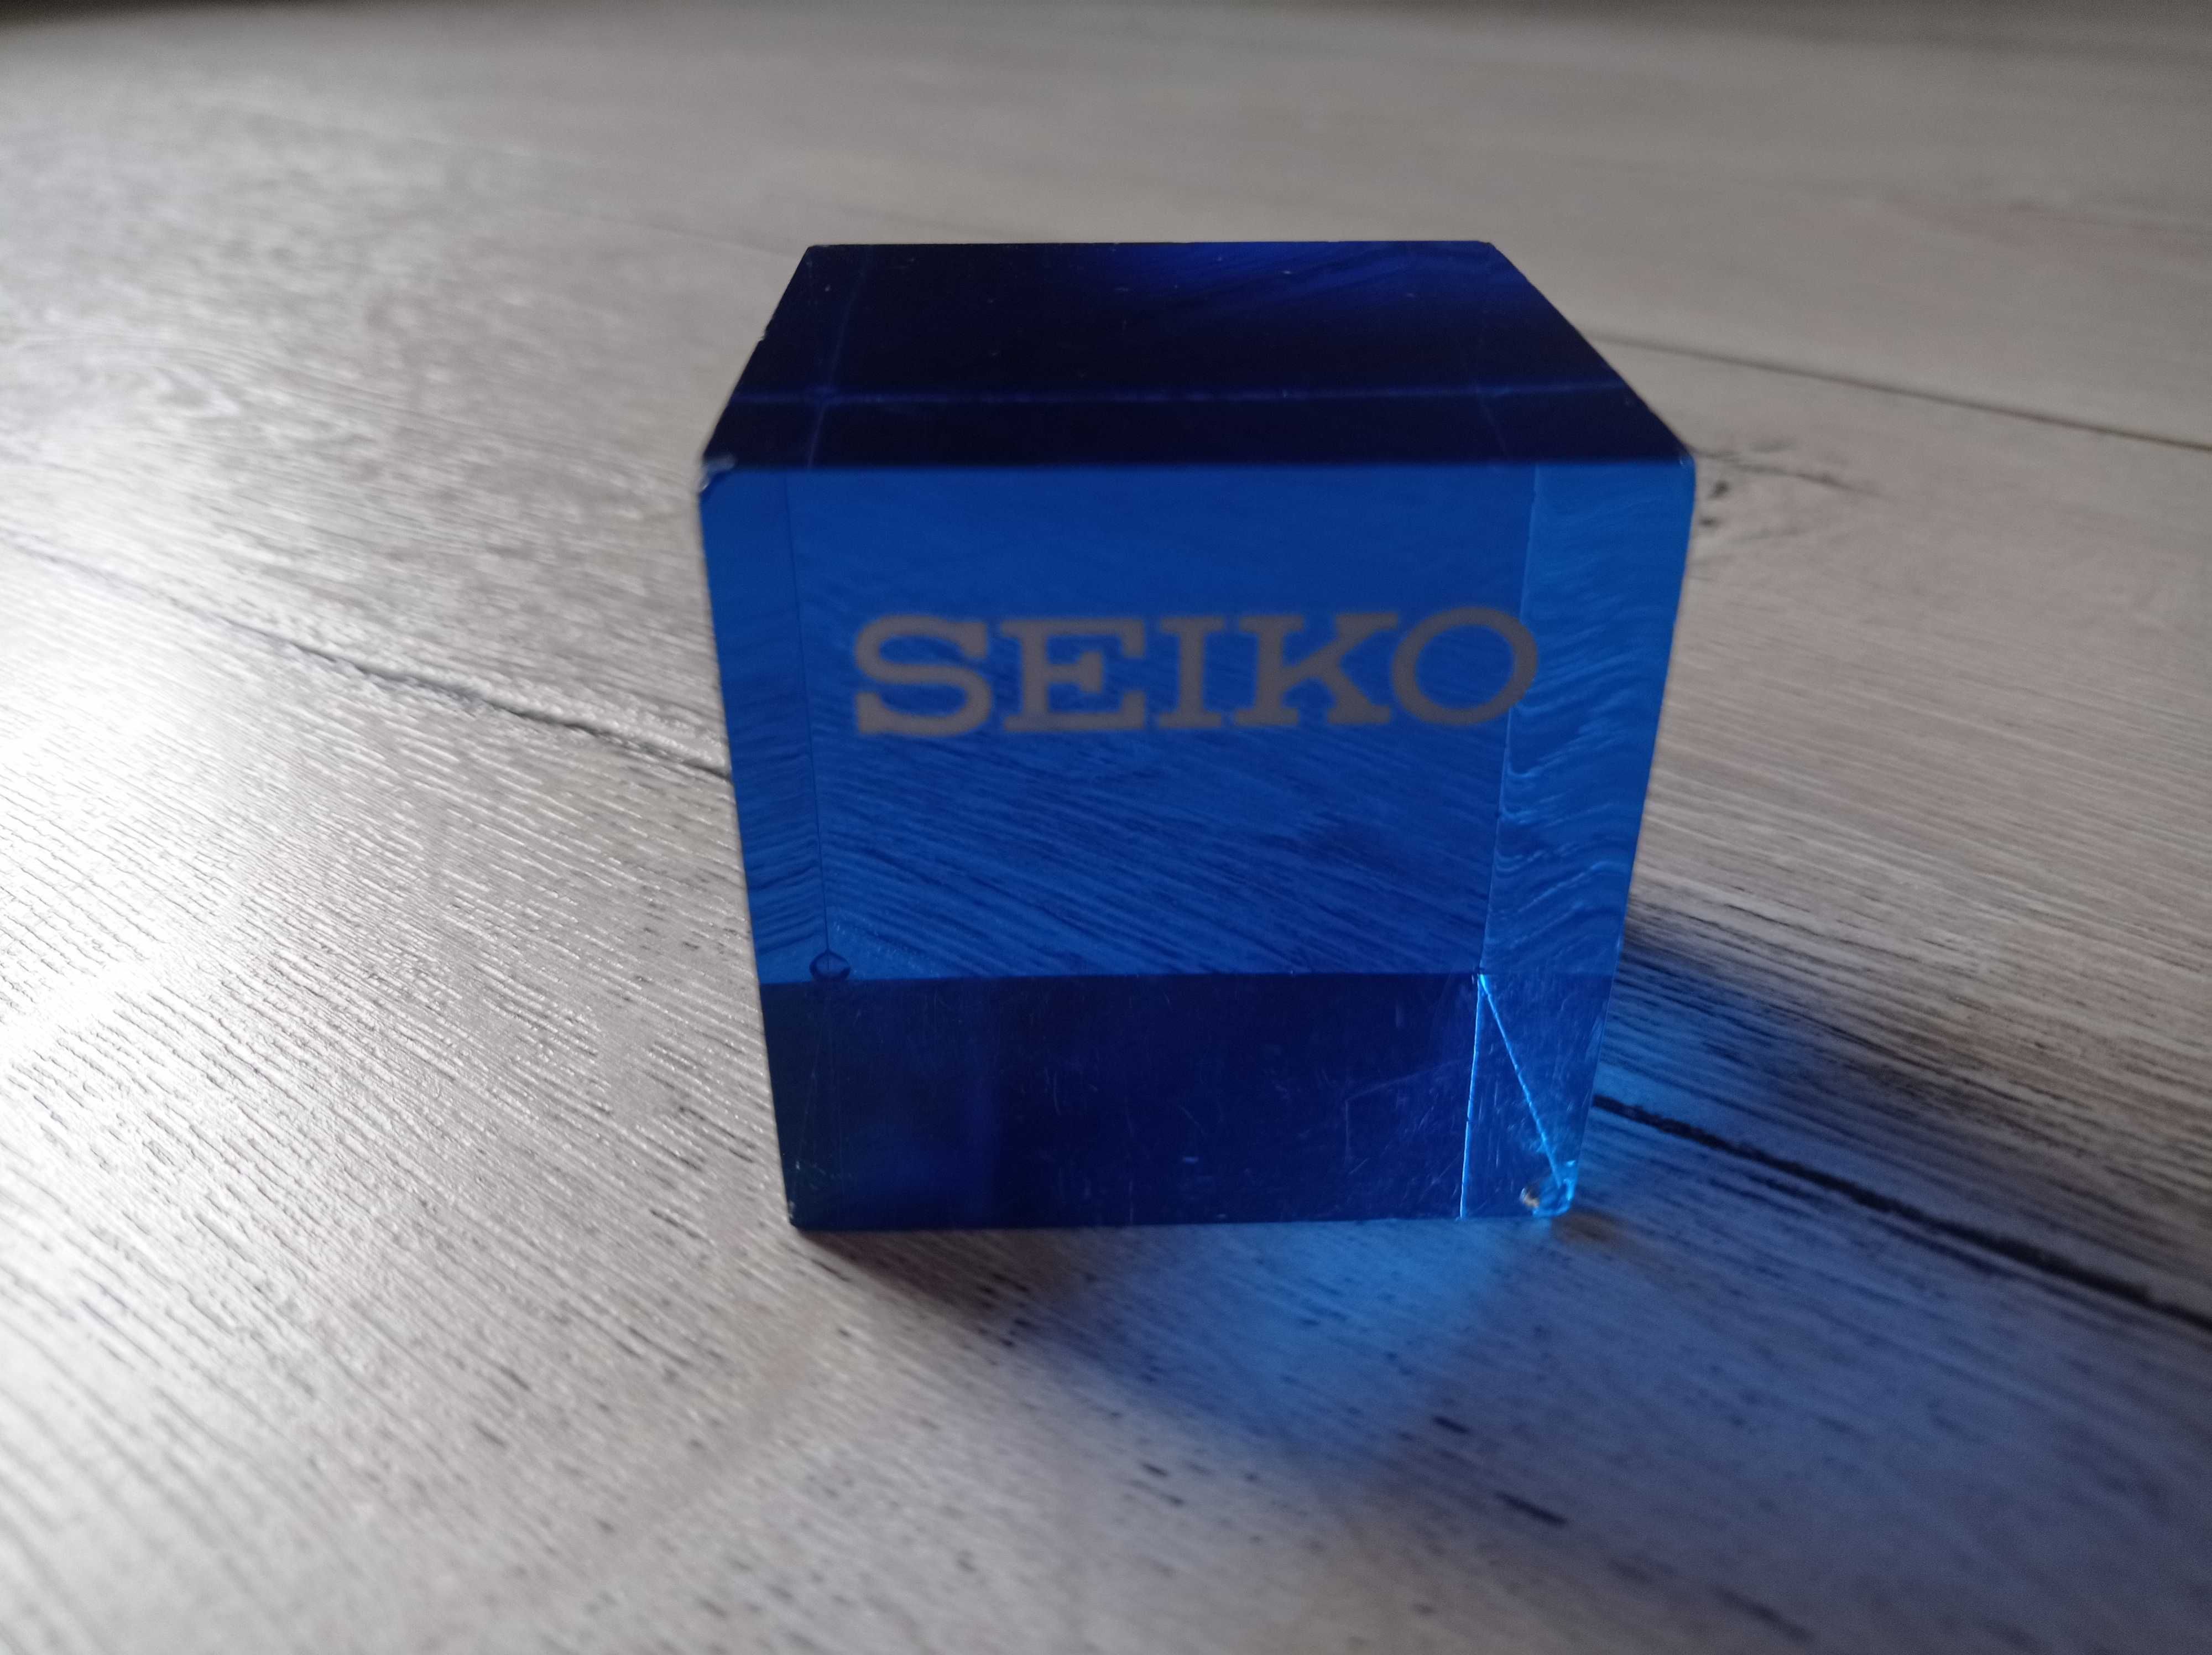 Szklana kostka do prezentacji / kolekcji zegarków Seiko - wyprzedaż